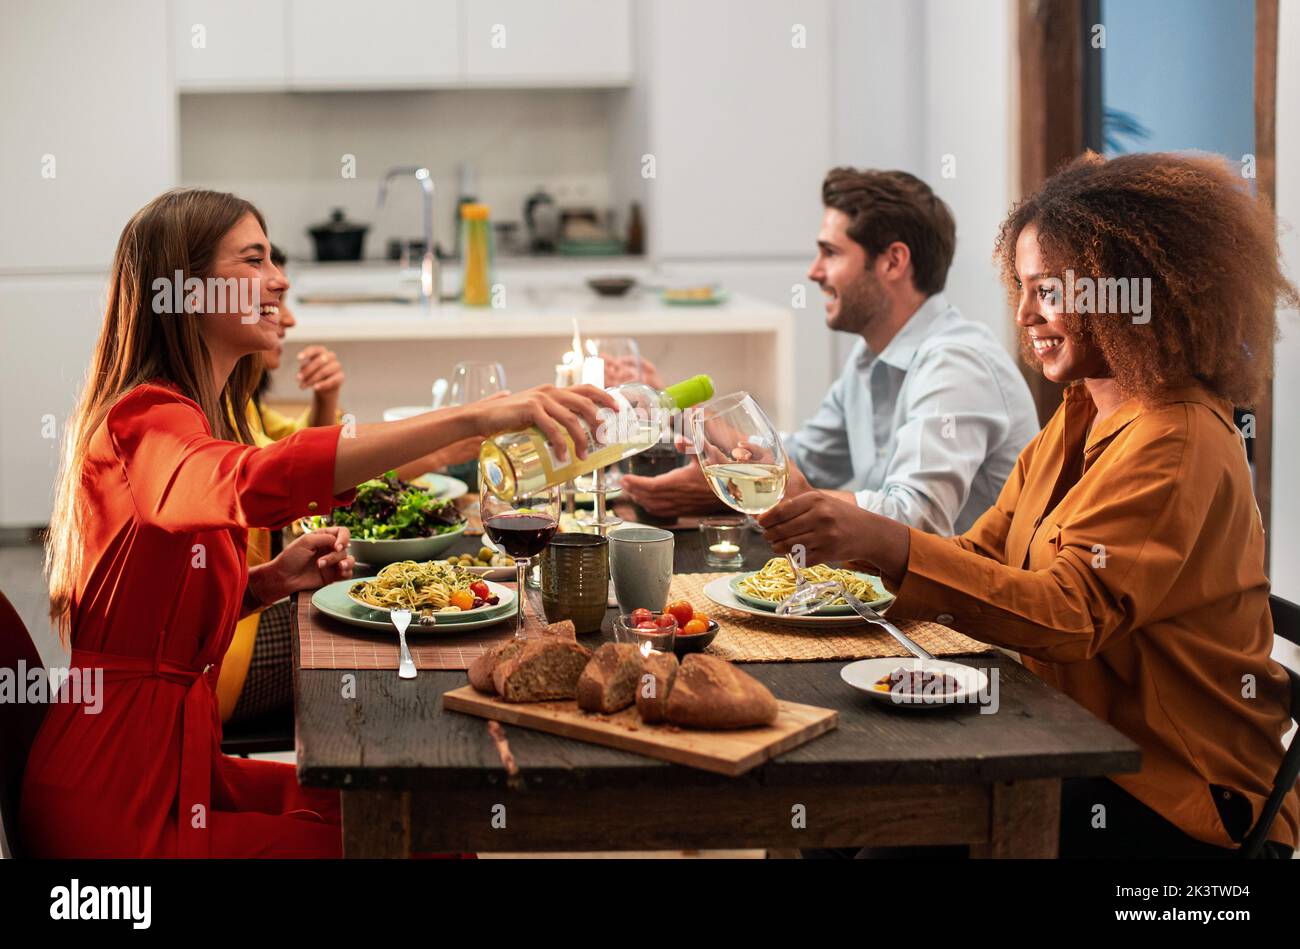 Vista lateral de alegres amigos multirraciales sentados en una mesa festiva y comiendo pasta durante la celebración y fiesta en un apartamento moderno Foto de stock